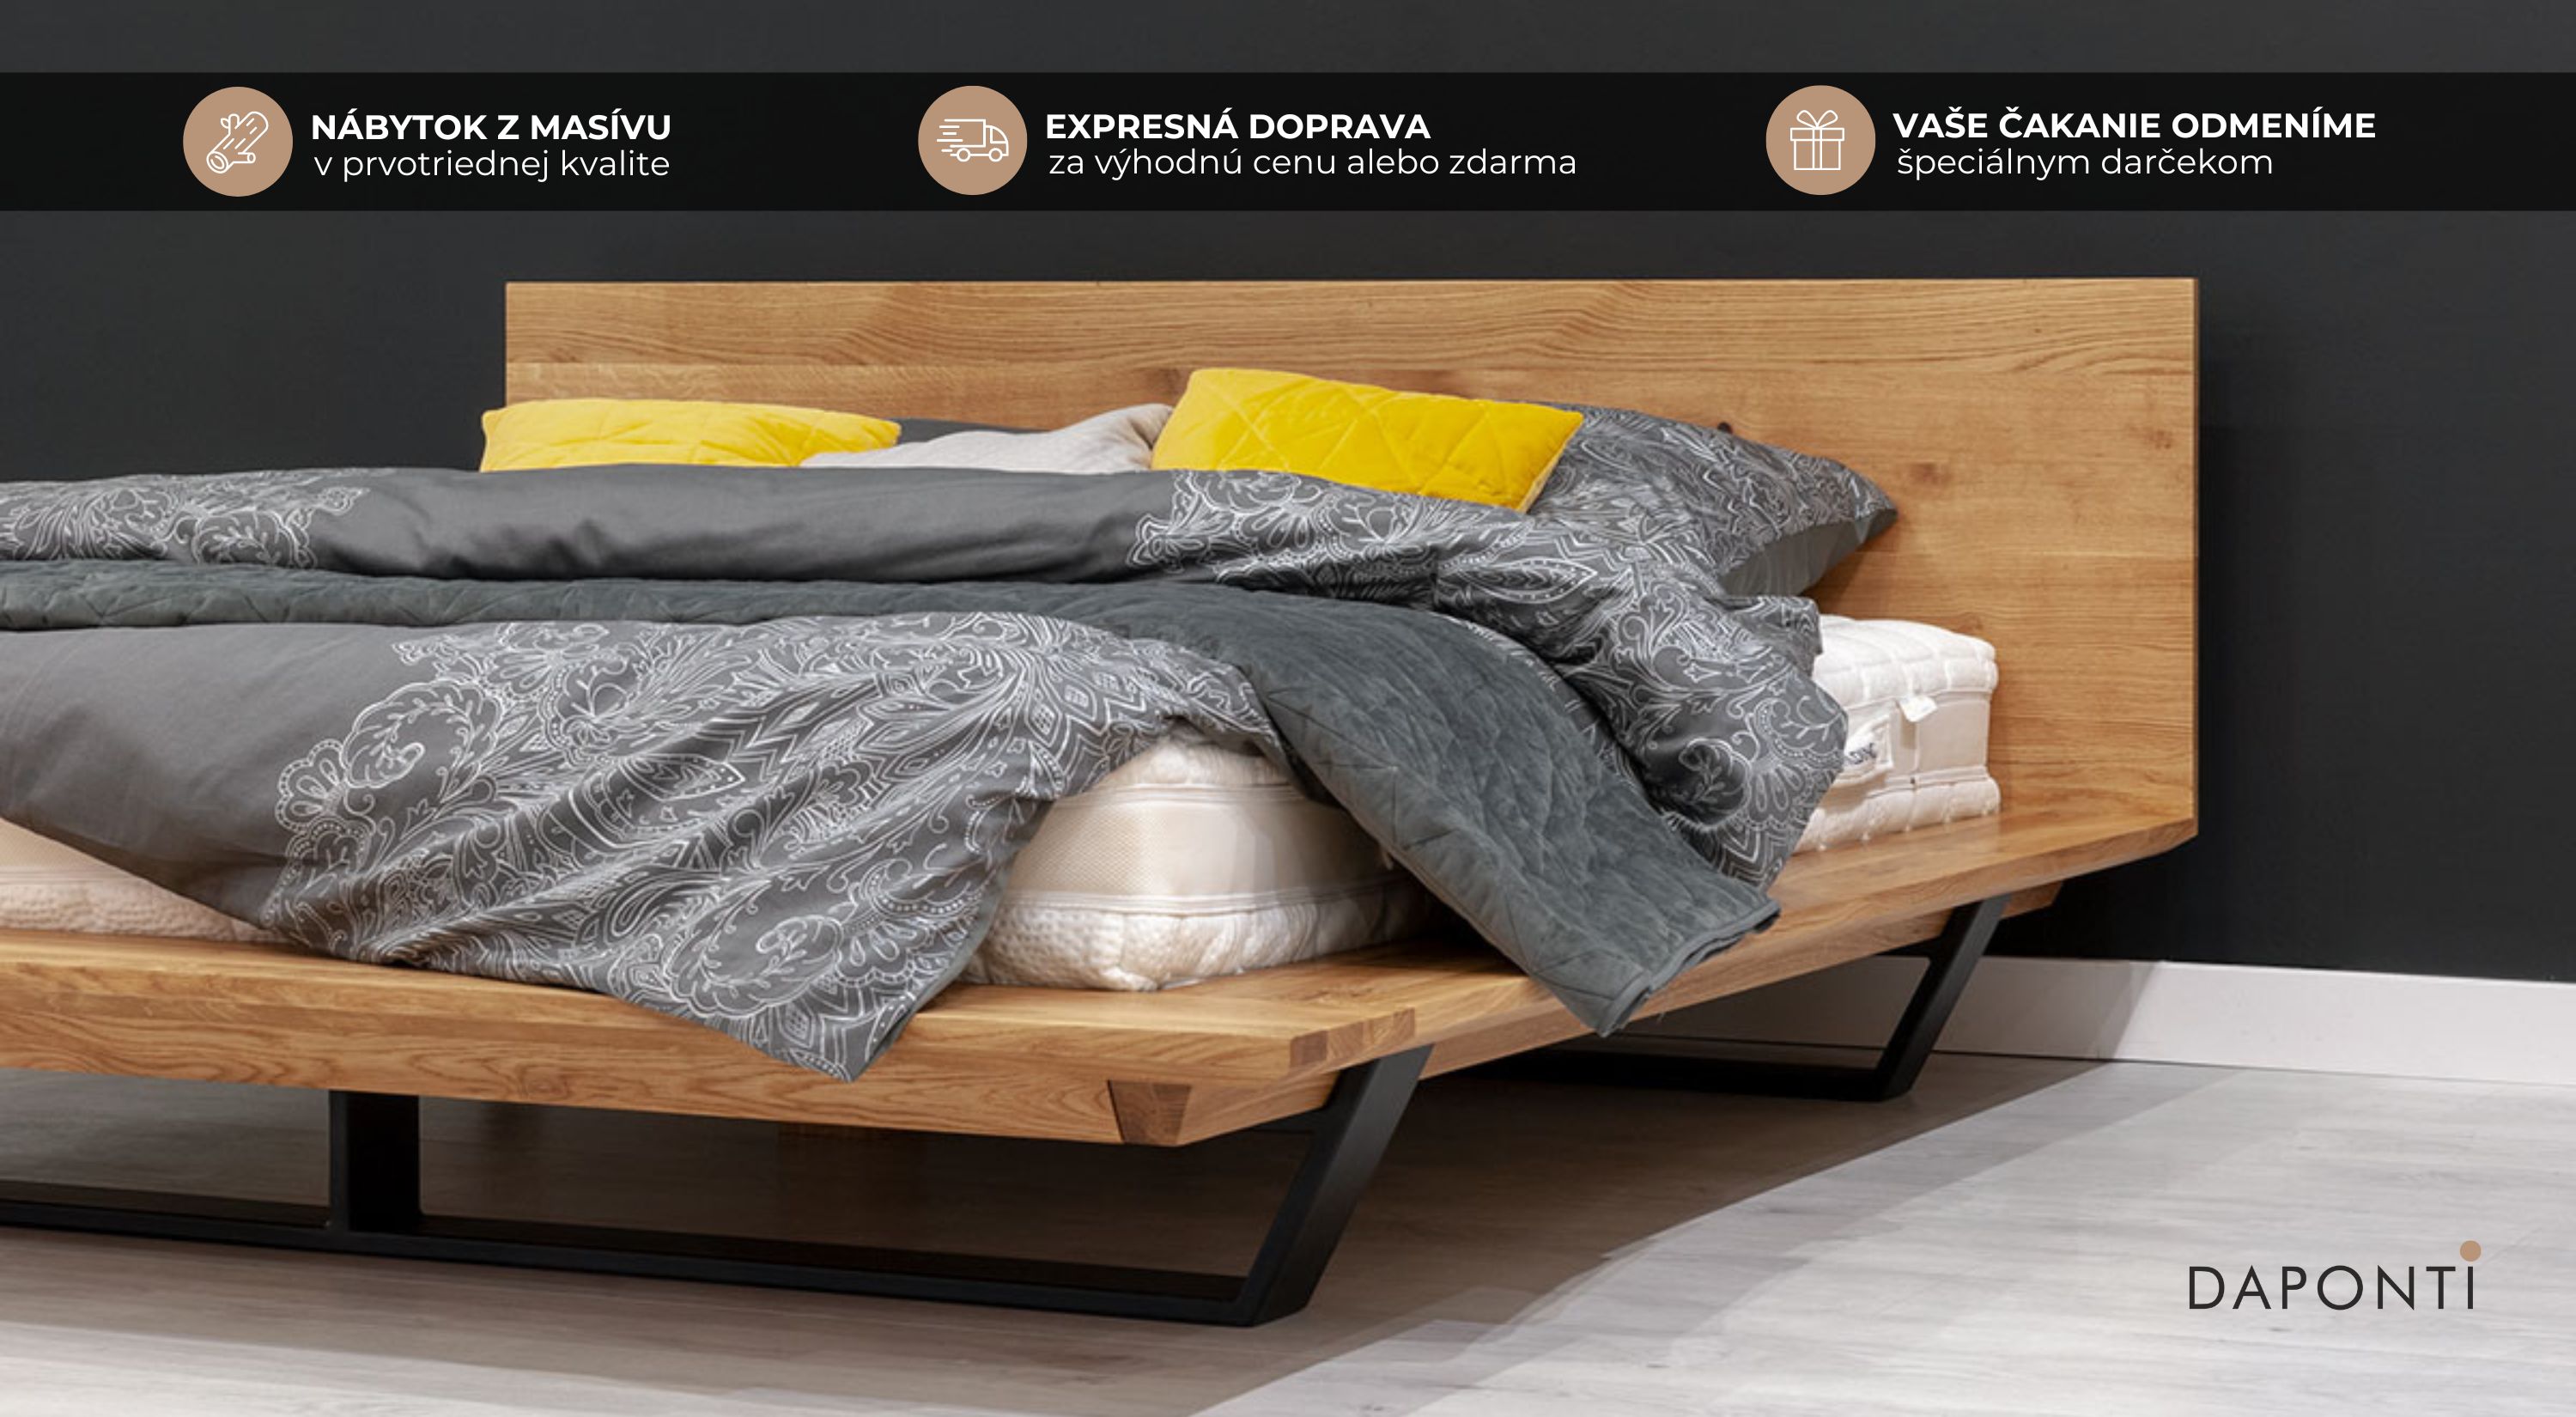 Moderná drevená manželská postel v japonskom štýle s atipickými kovovými nohami